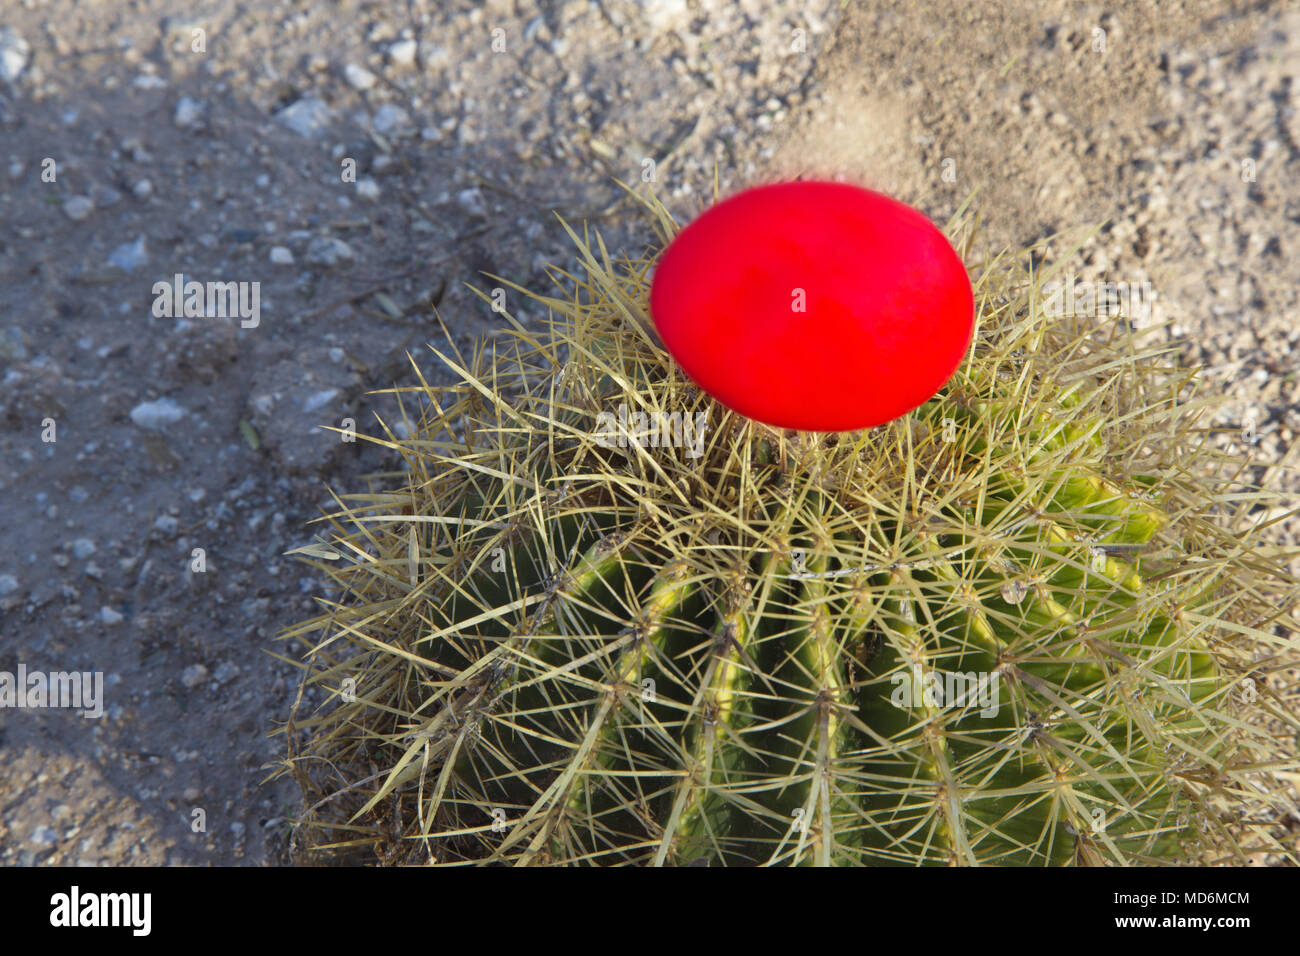 Risque de placement conceptuel et financier environnement défi symbolisé dans red nest assis dans des épines du désert de cactus du fourreau. Banque D'Images